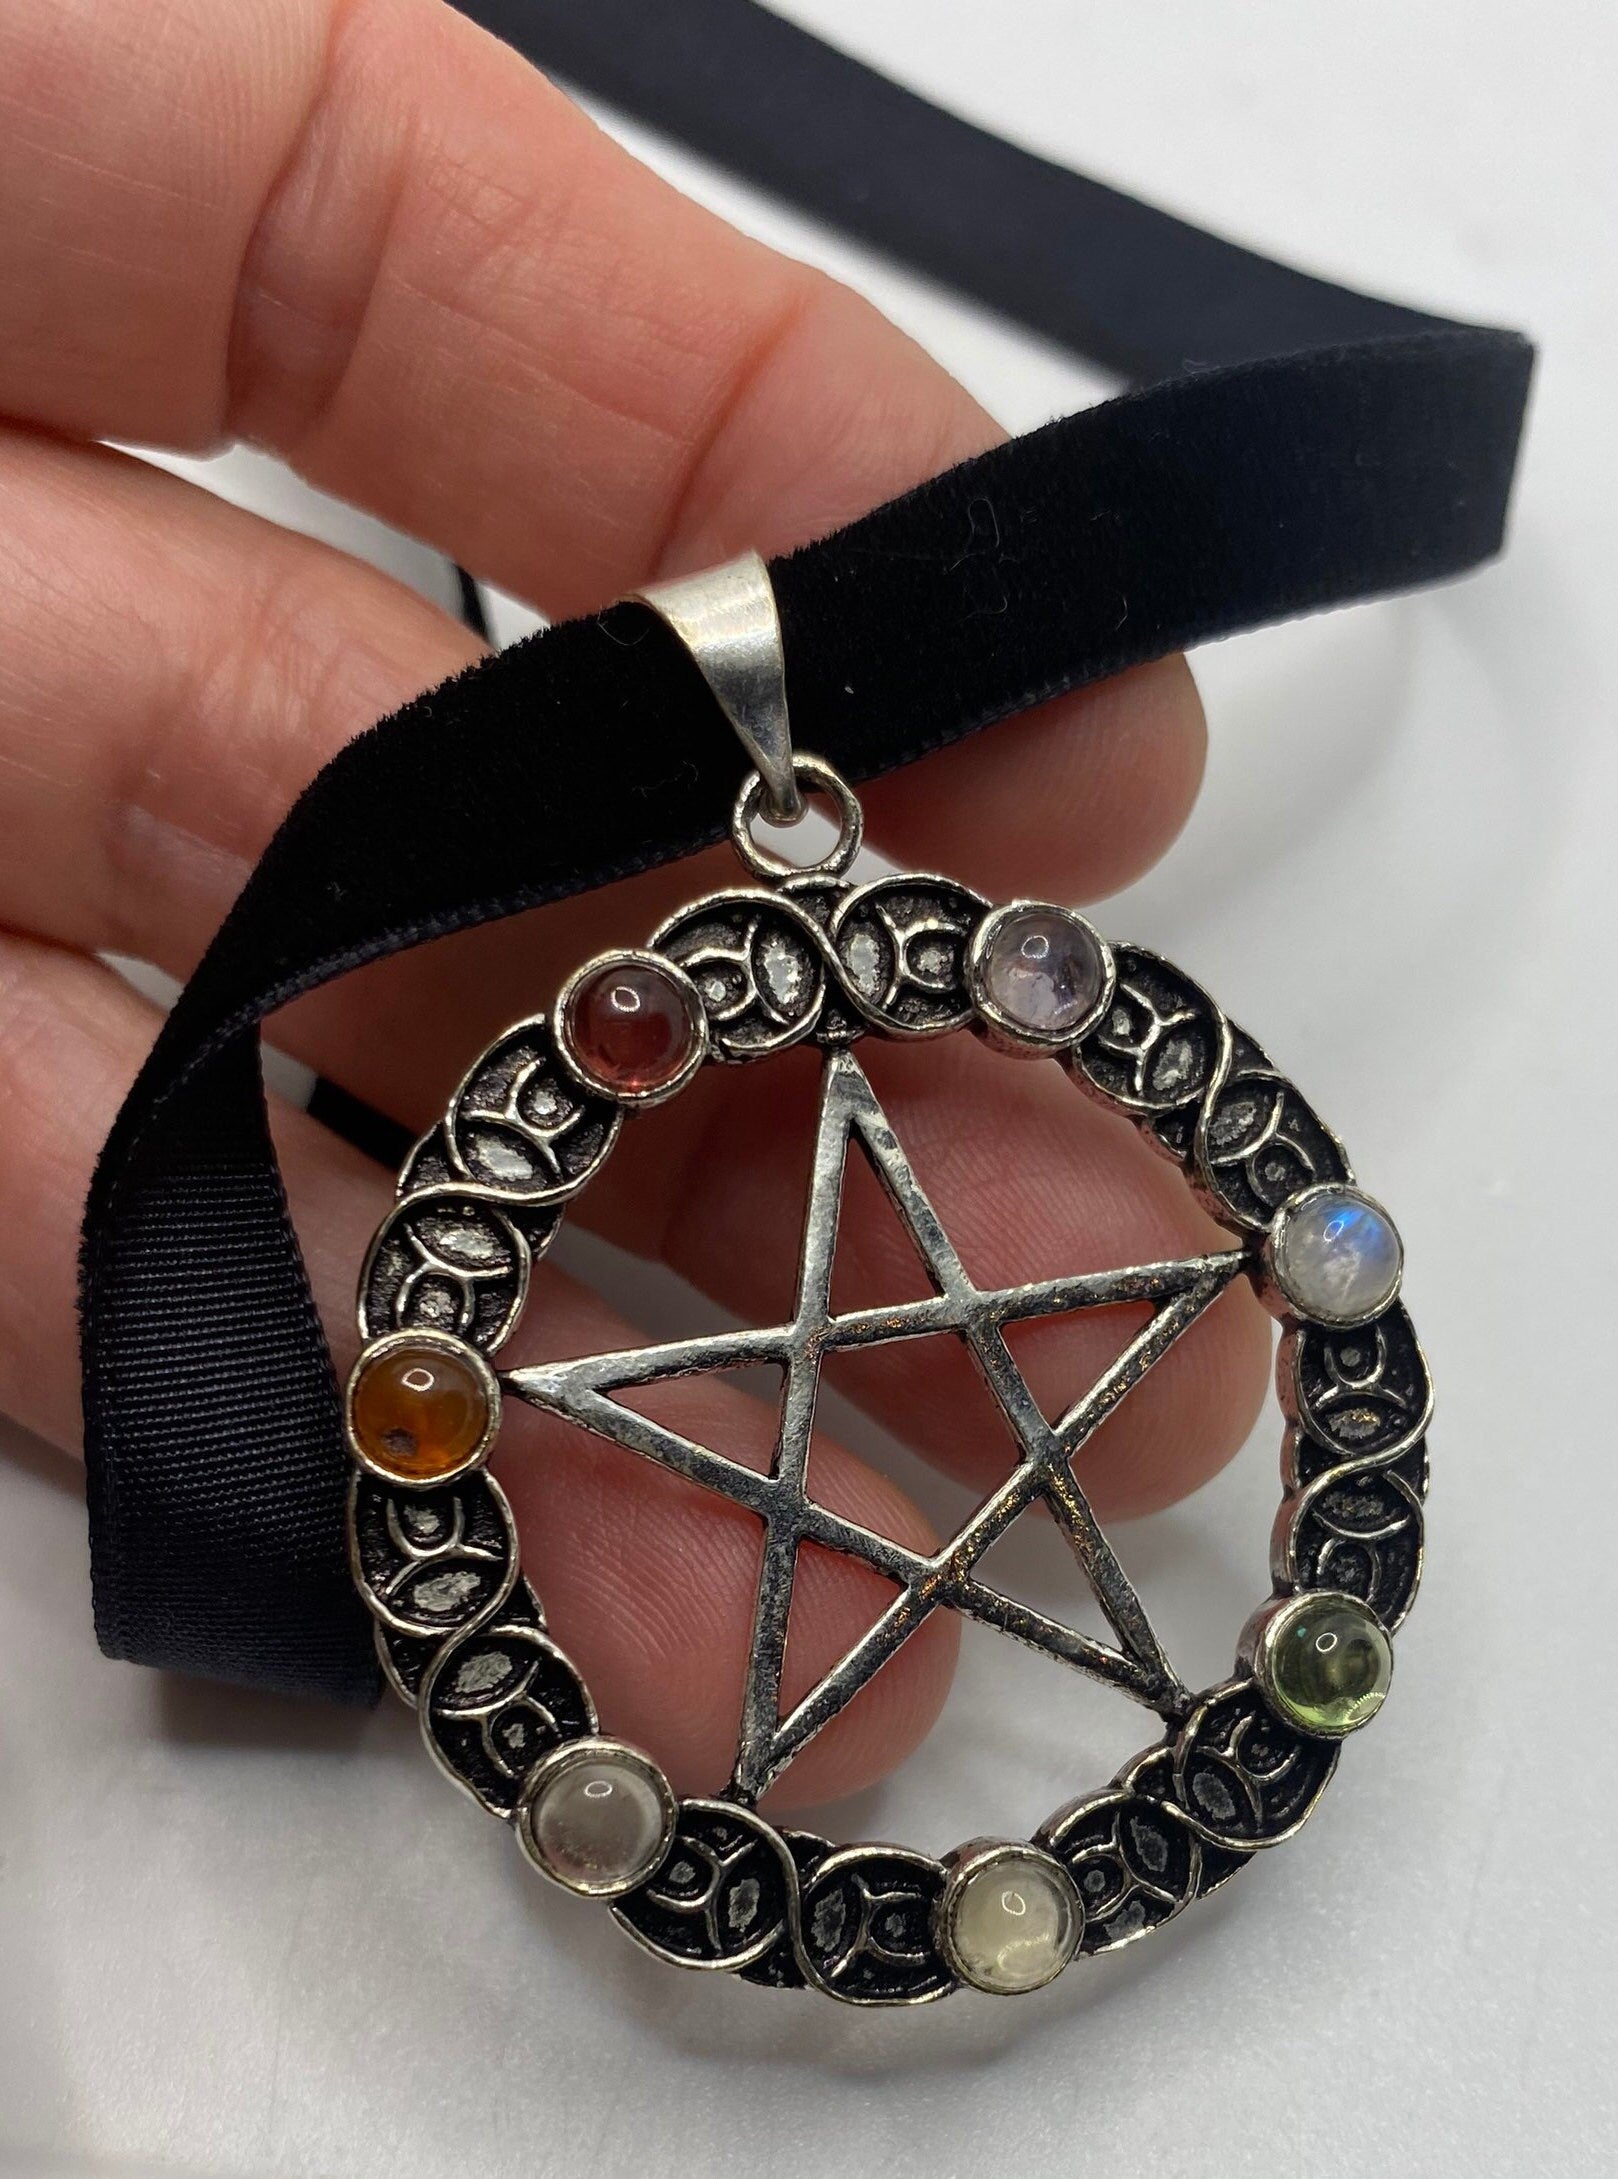 Chakra Stones in Bronze Pentagram Star on Velvet Choker Necklace Vintage